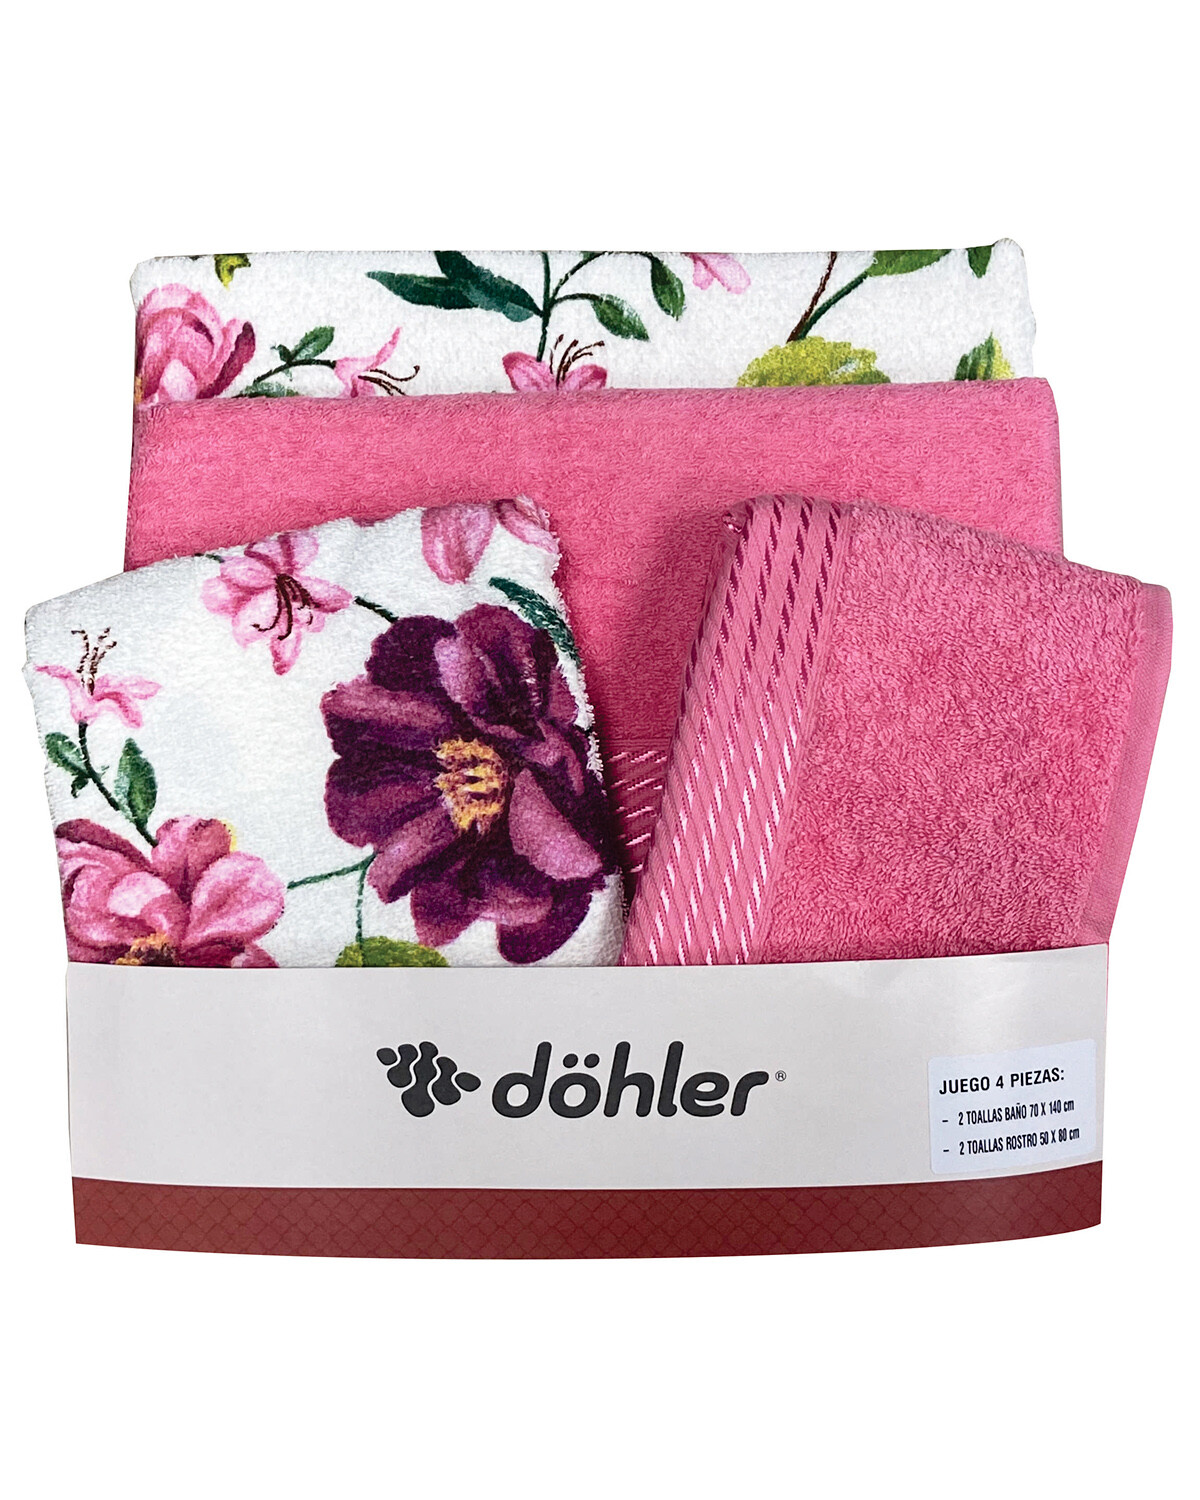 Juego de 4 toallas de baño Dohler Prisma 100% algodón diseño